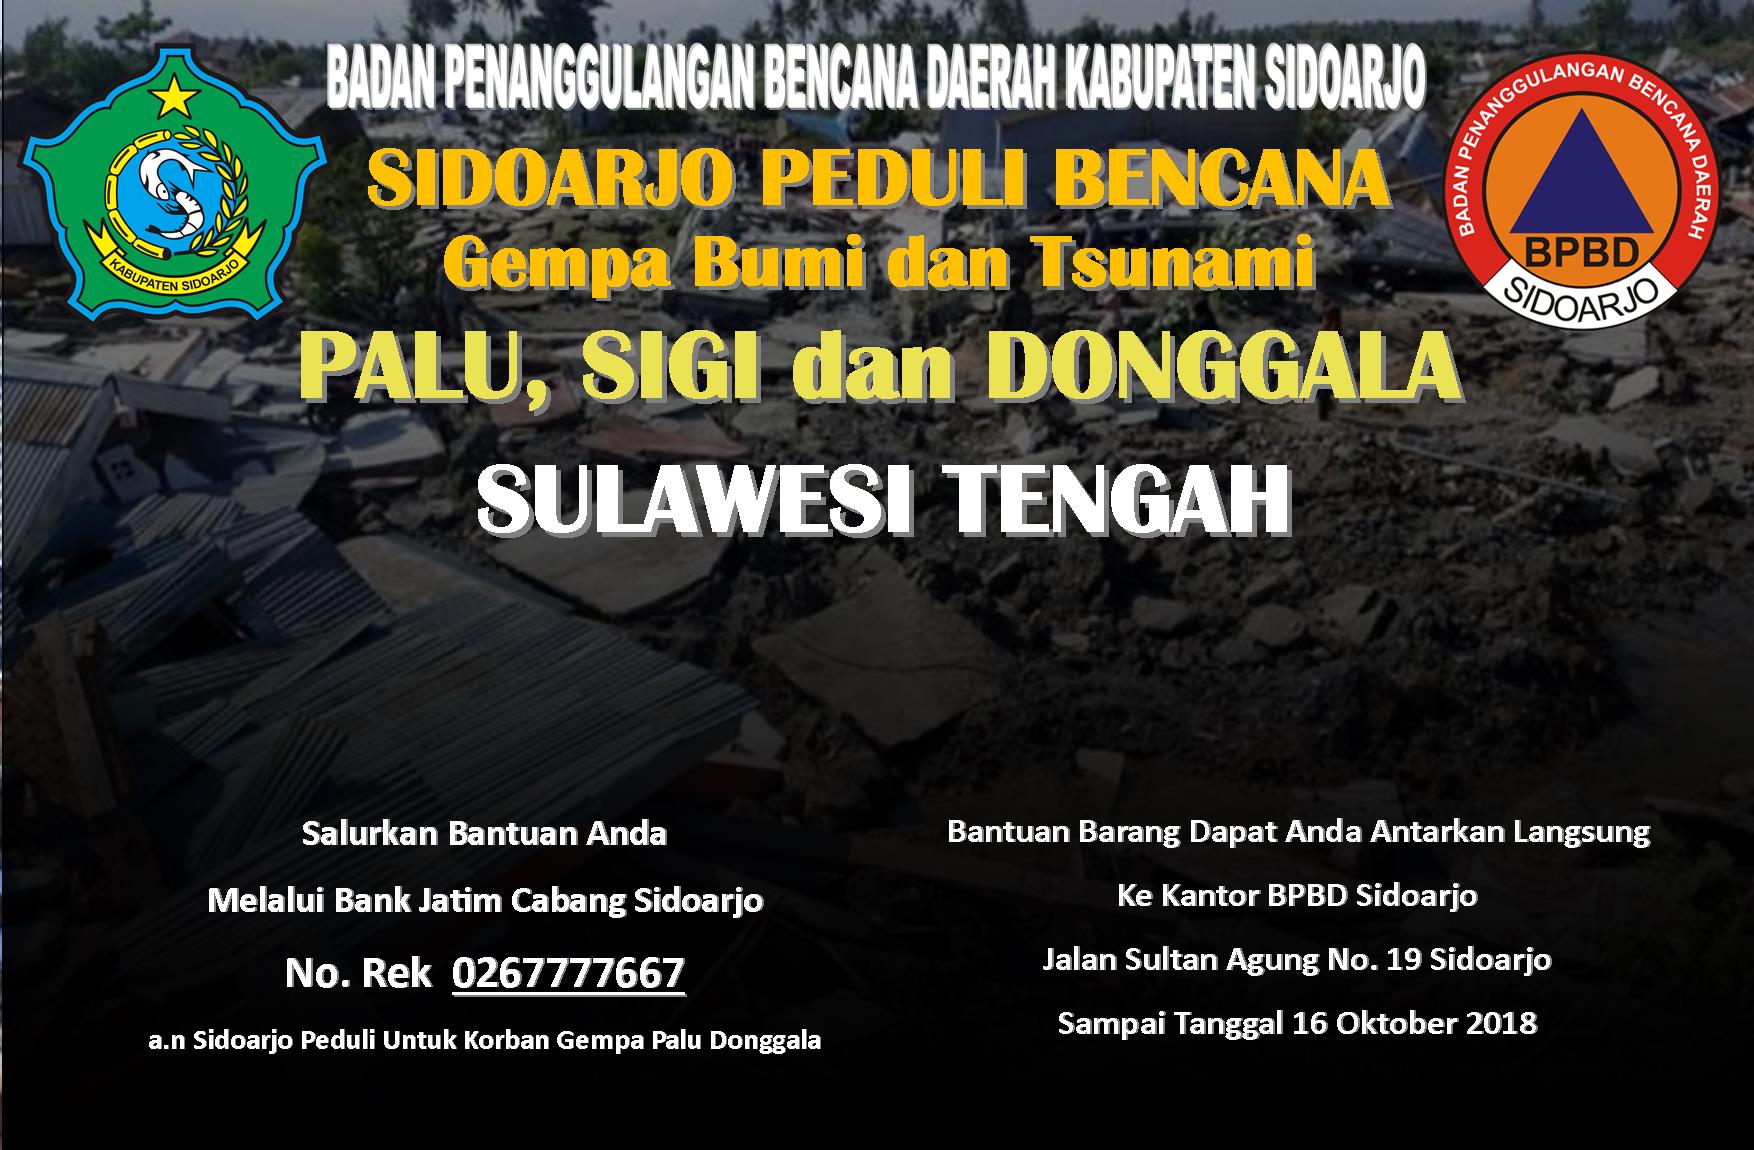 Pemerintah Kabupaten Sidoarjo membuka posko Sidoarjo peduli korban gempa Palu, Donggala dan Sigi Sulawesi Tengah